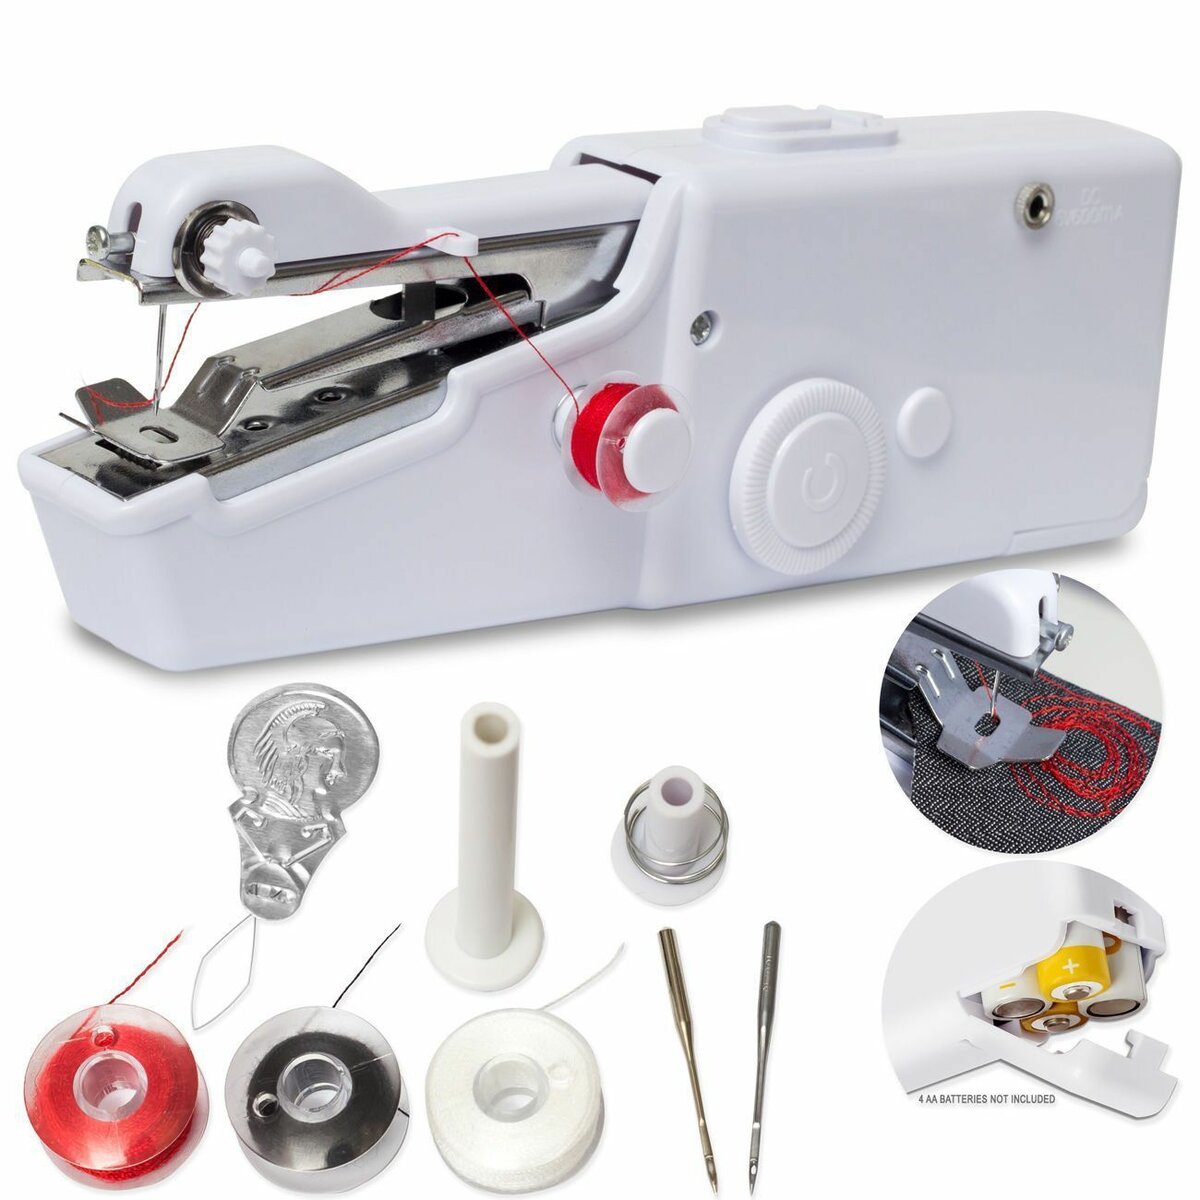 Портативная швейная машинка The Handheld Sewing Machine оптом - Фото №4